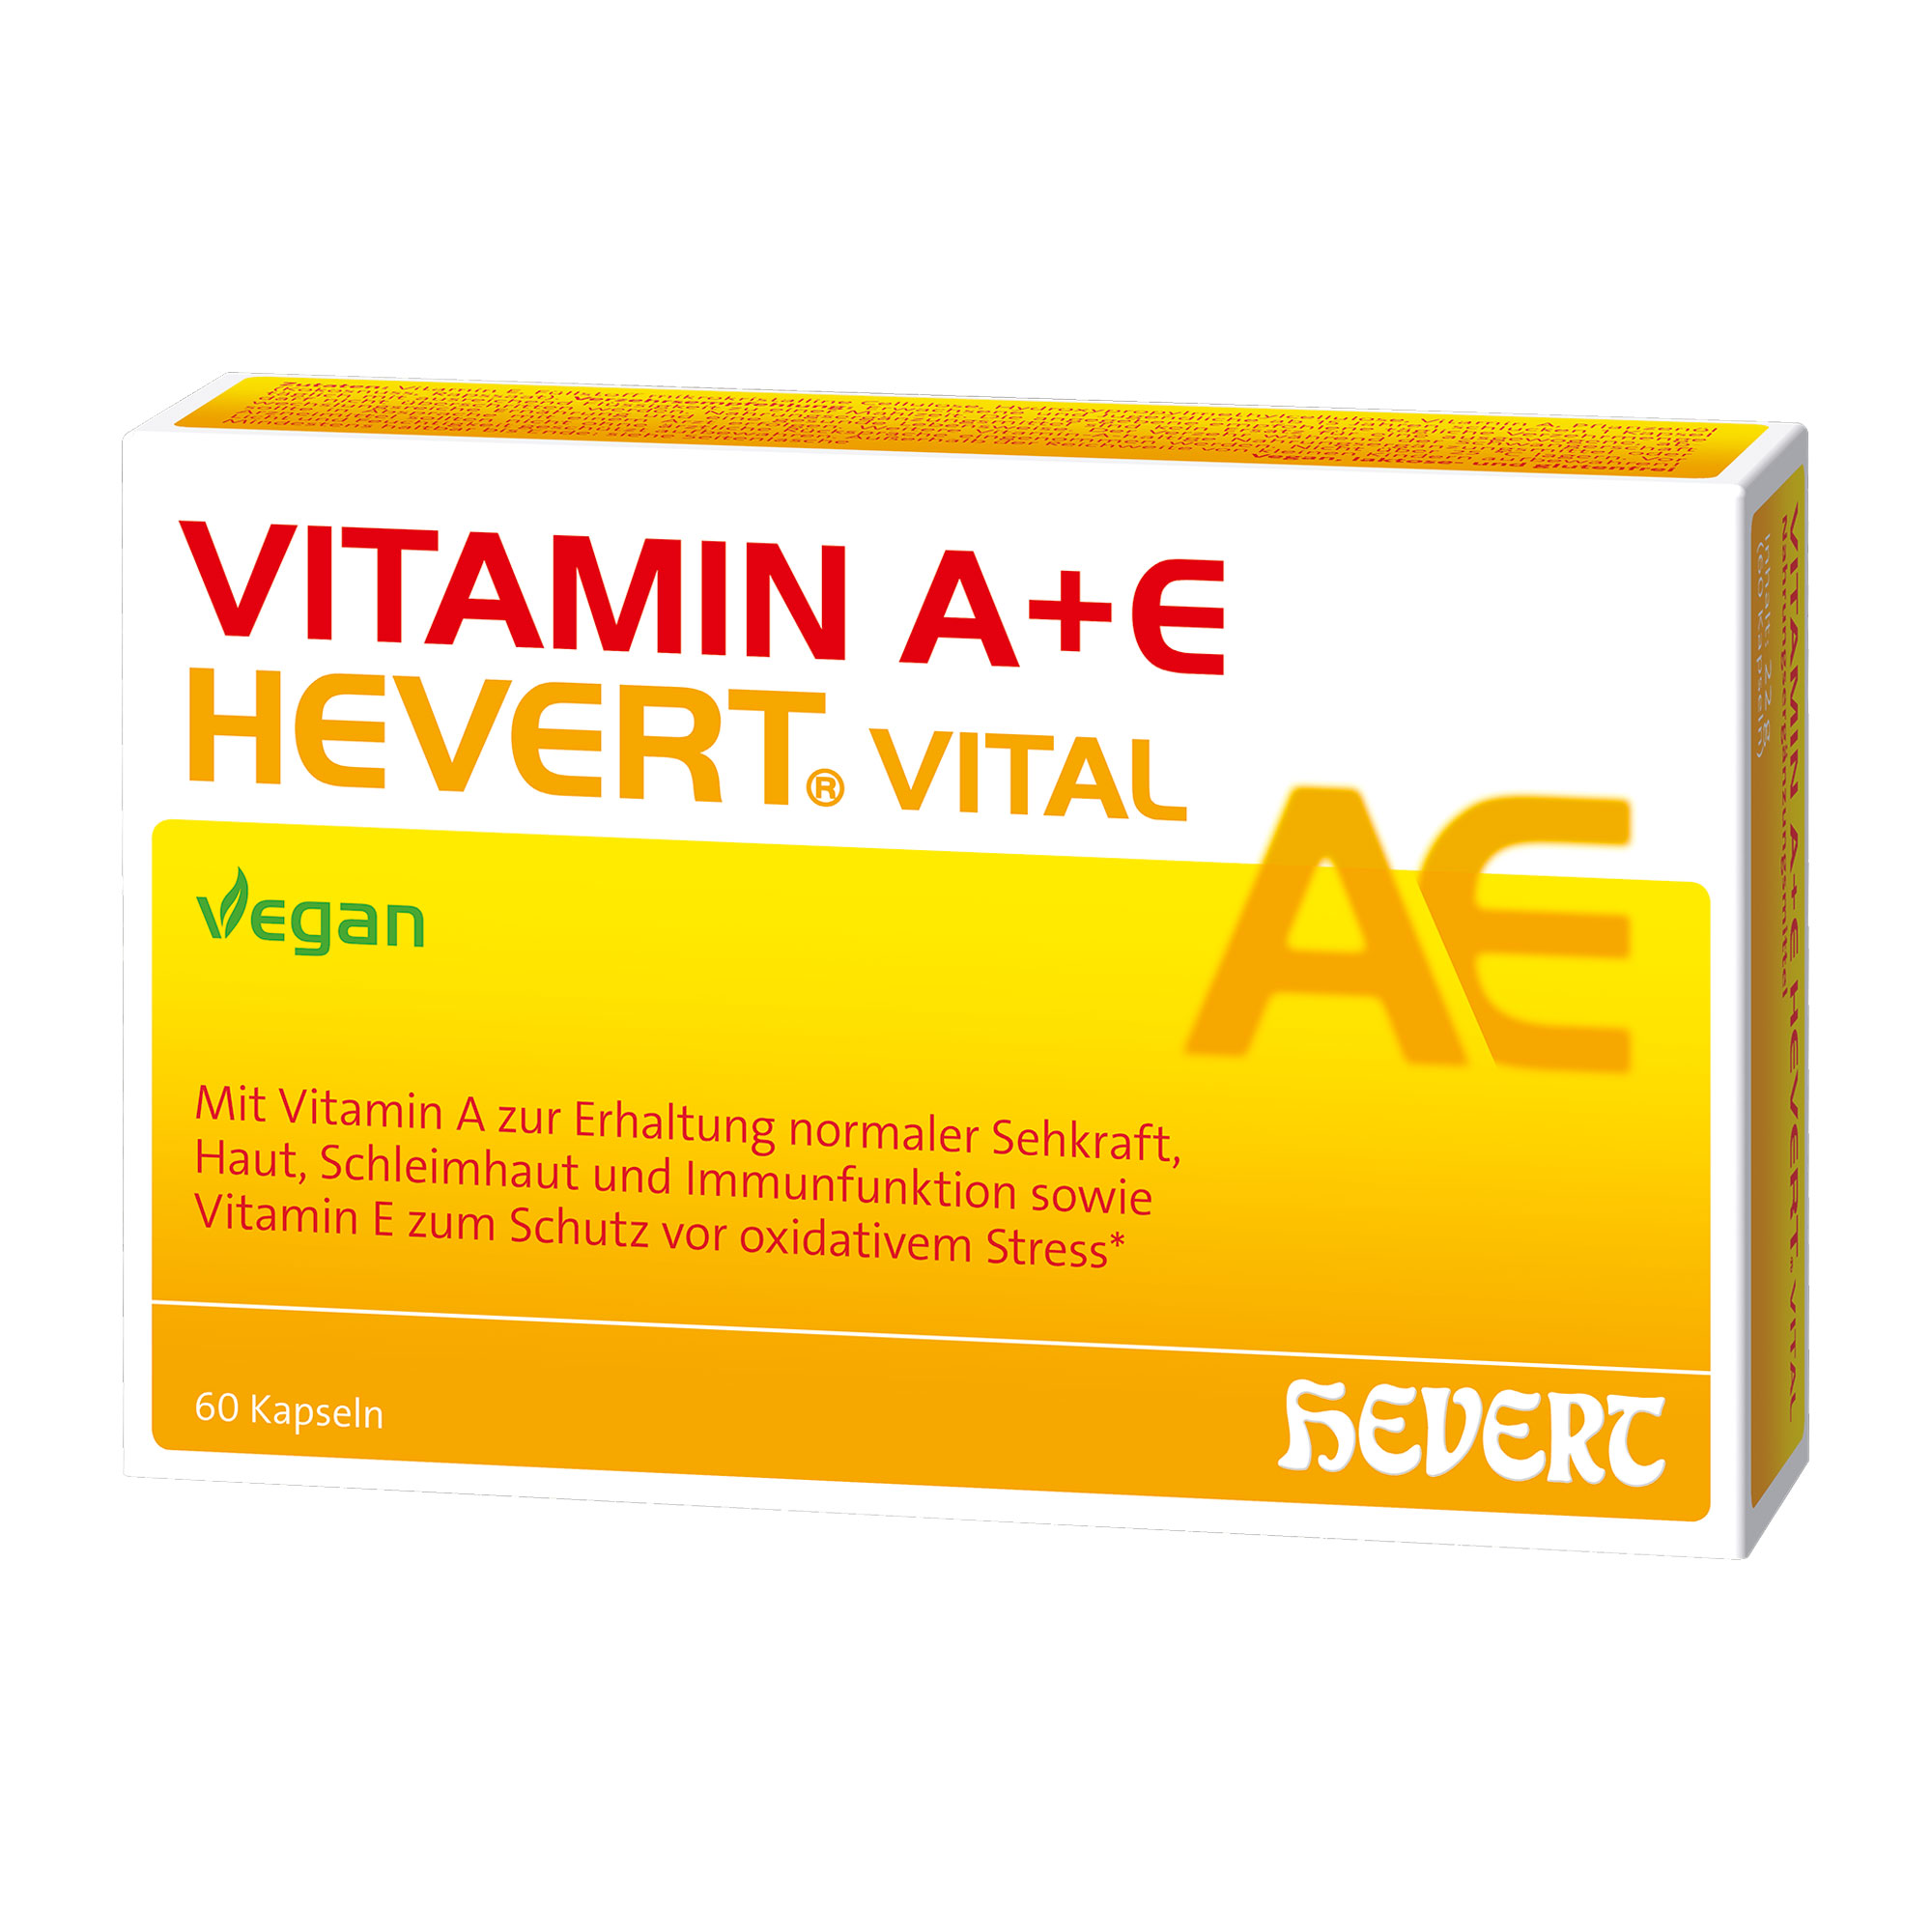 Veganes Nahrungsergänzungsmittel mit Vitamin A und E.